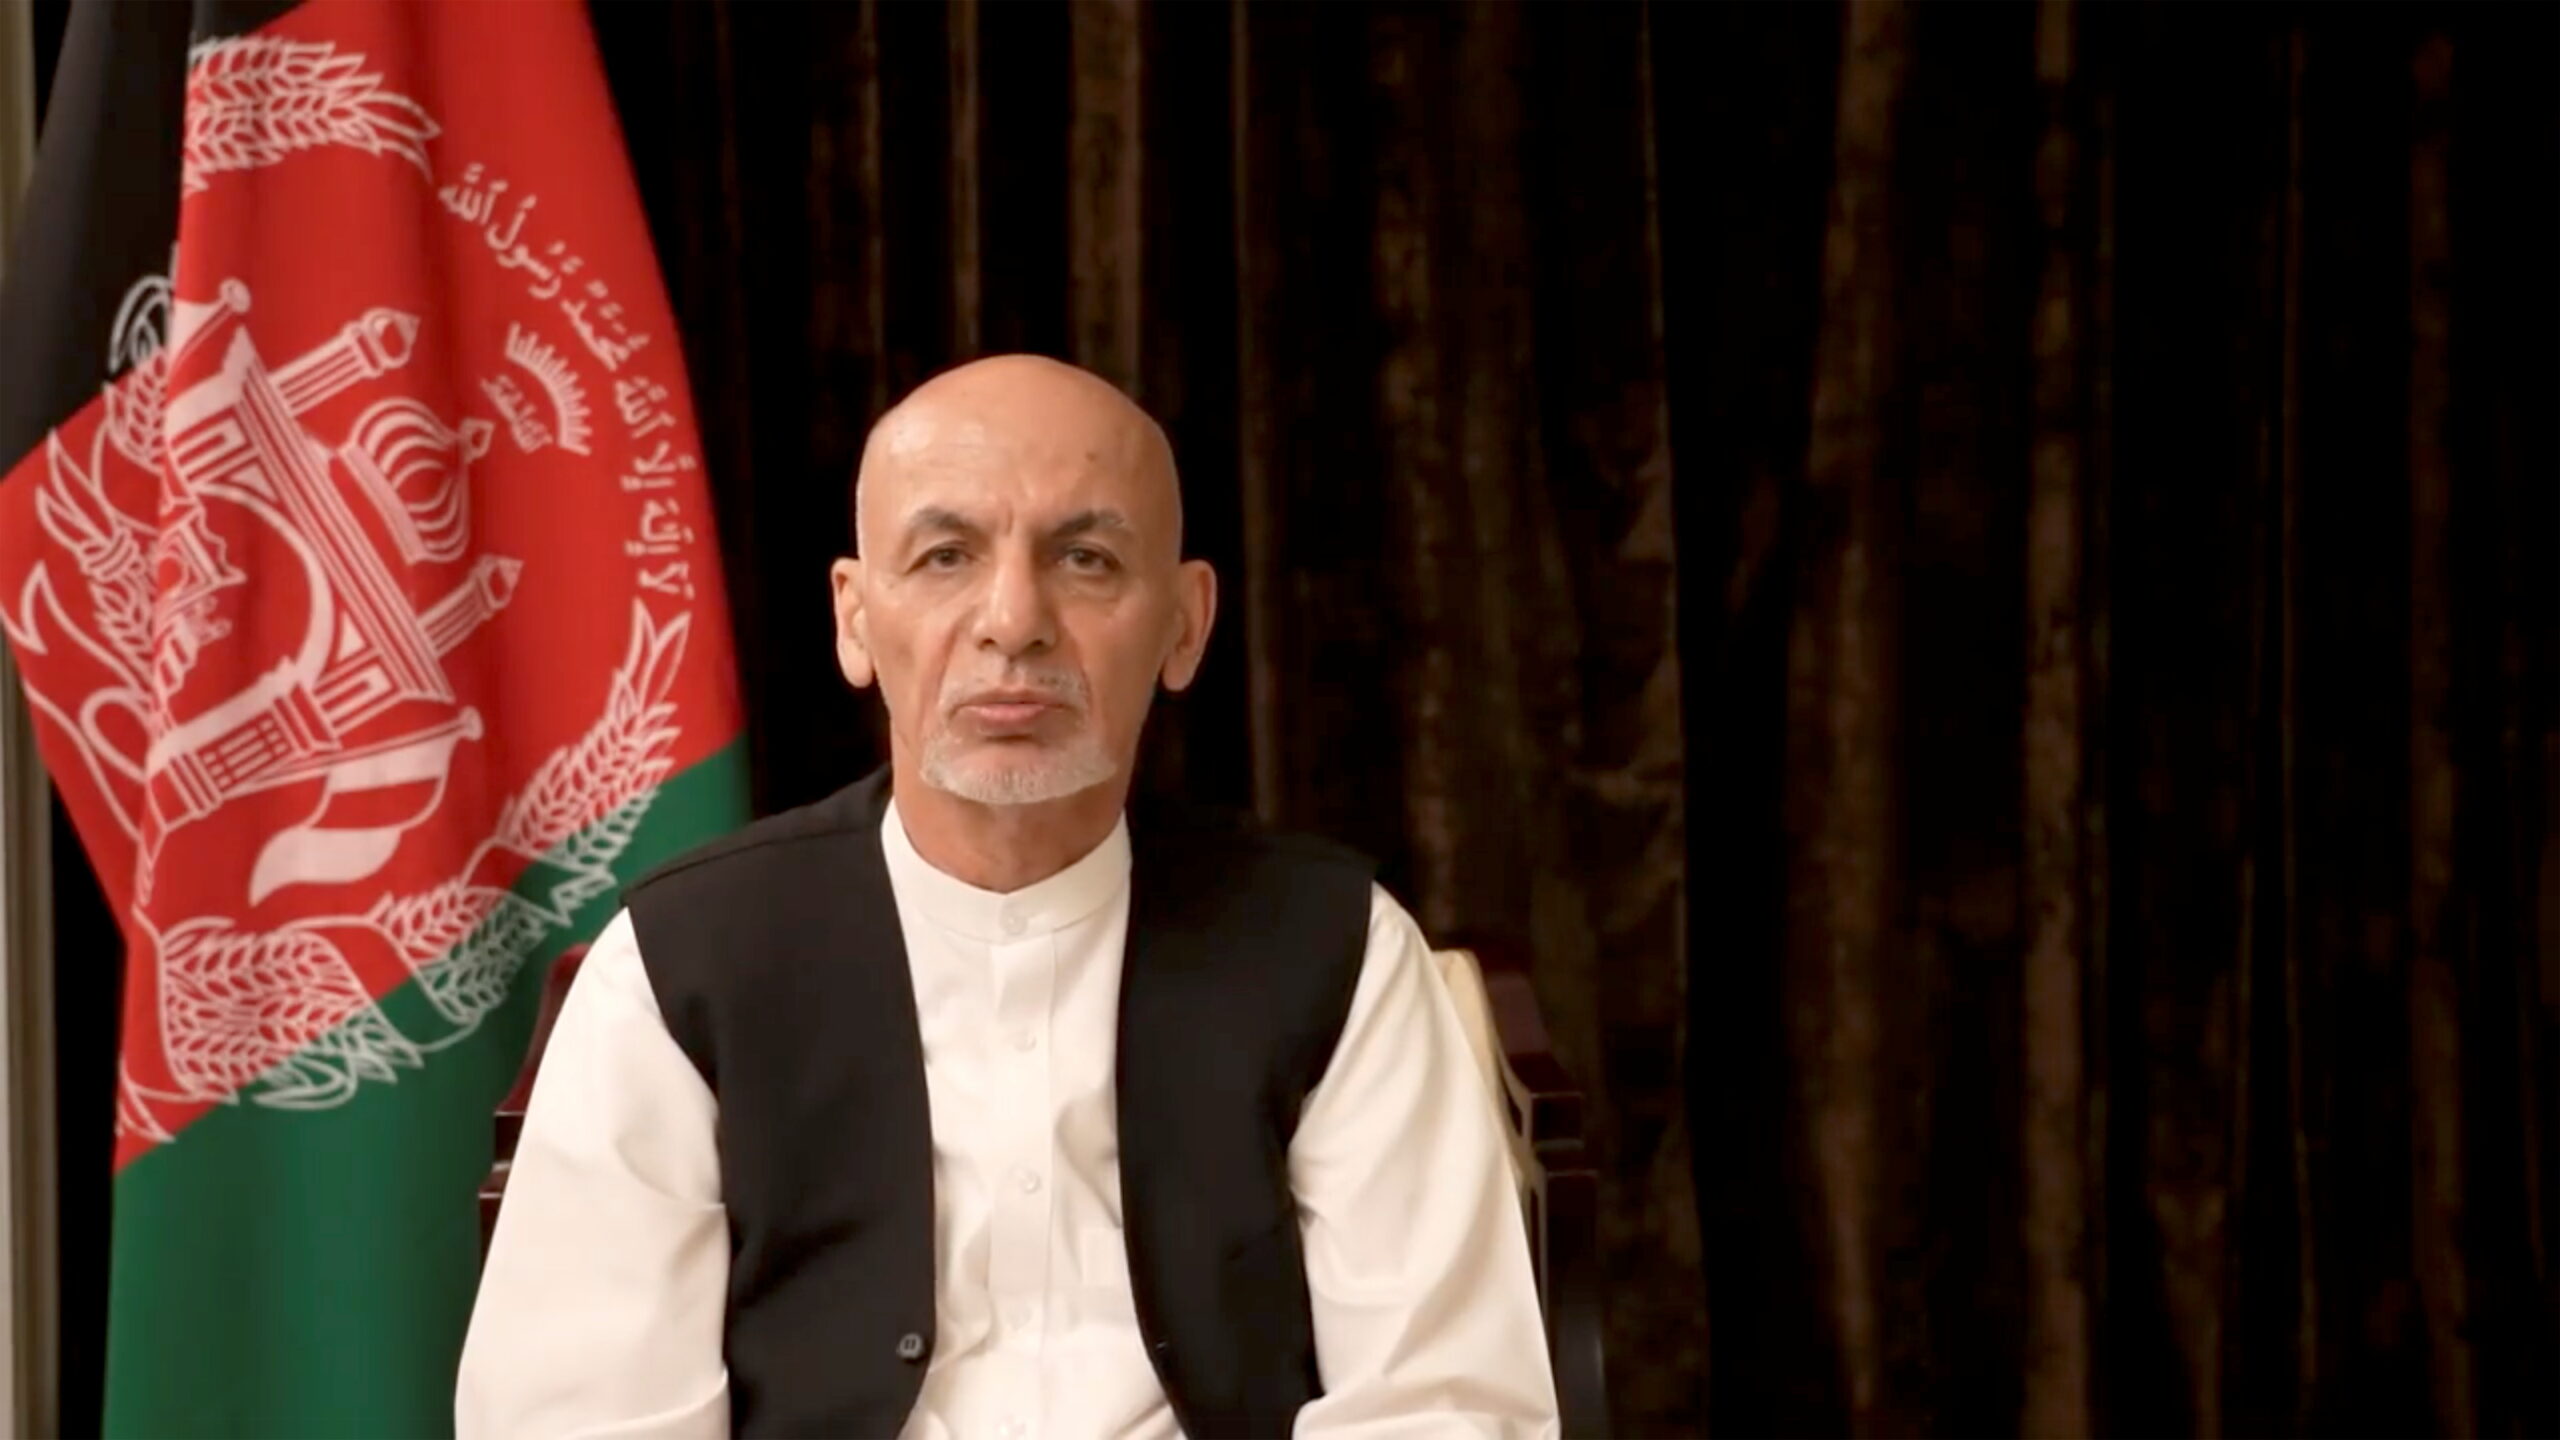 ผู้นำอัฟกานิสถาน ตอบ ขนเงินมหาศาลหนีออกนอกประเทศ จริงหรือไม่ ? – ต่างประเทศ